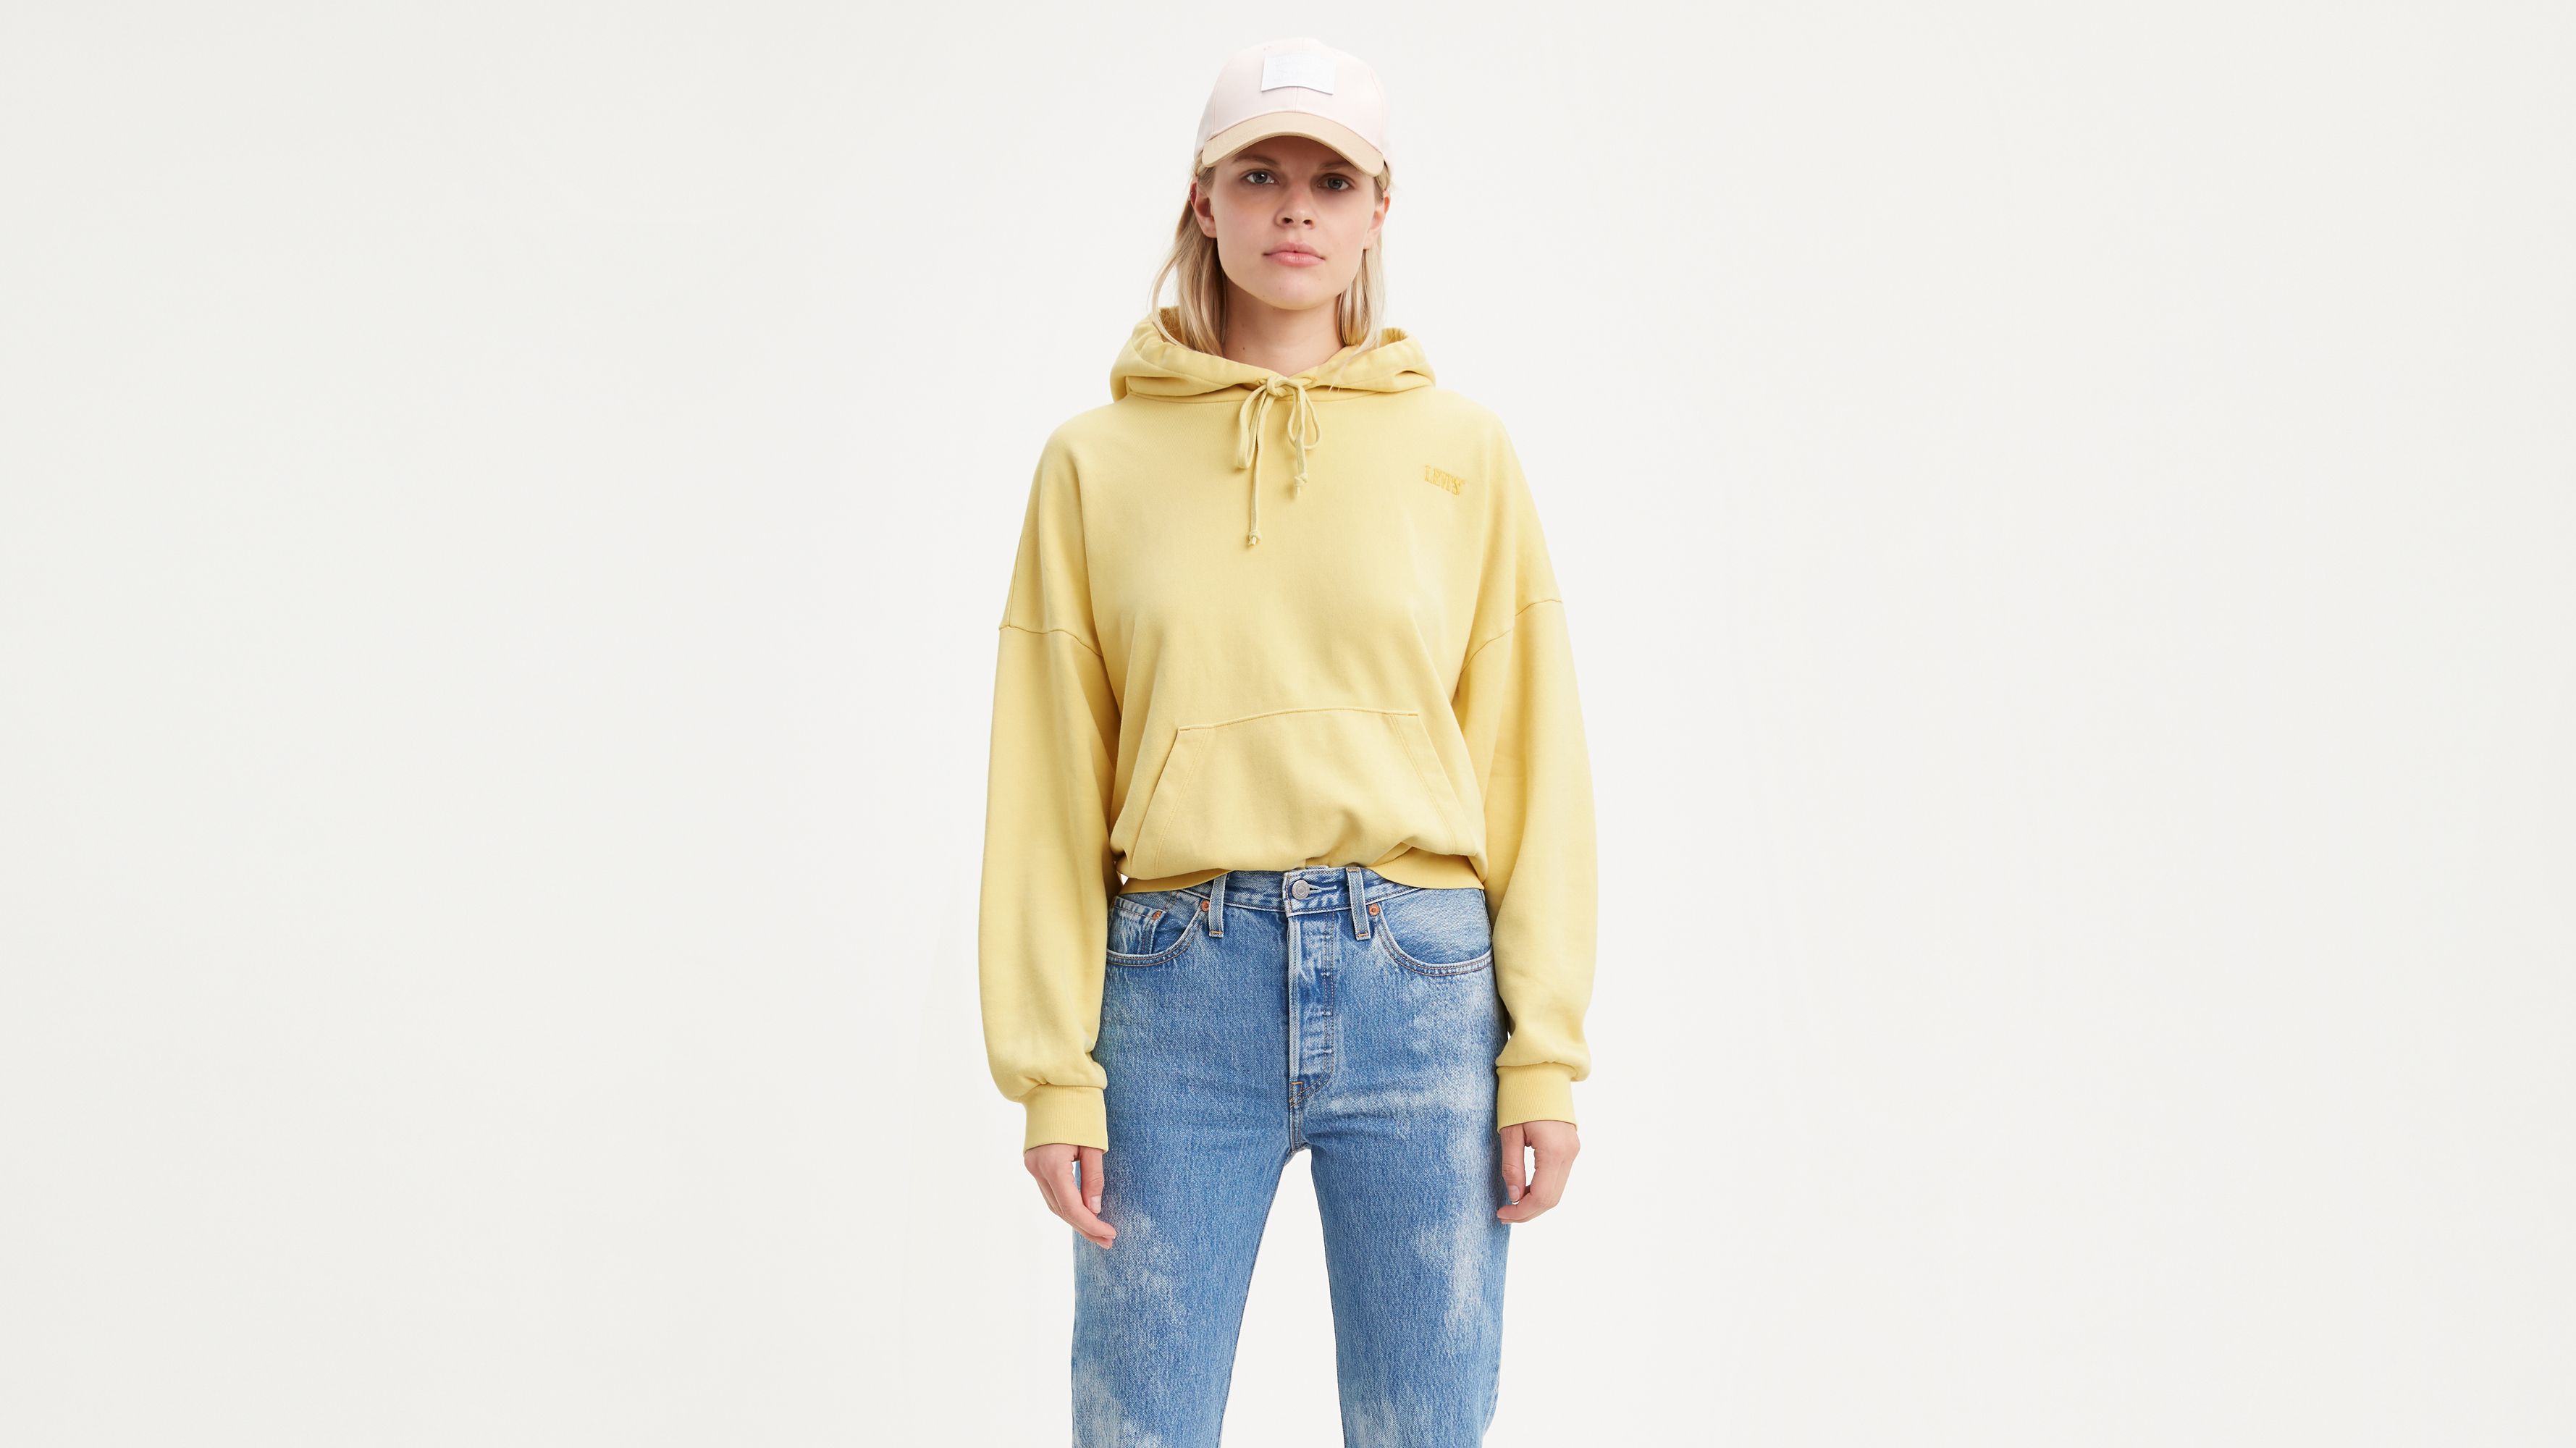 levis yellow sweatshirt